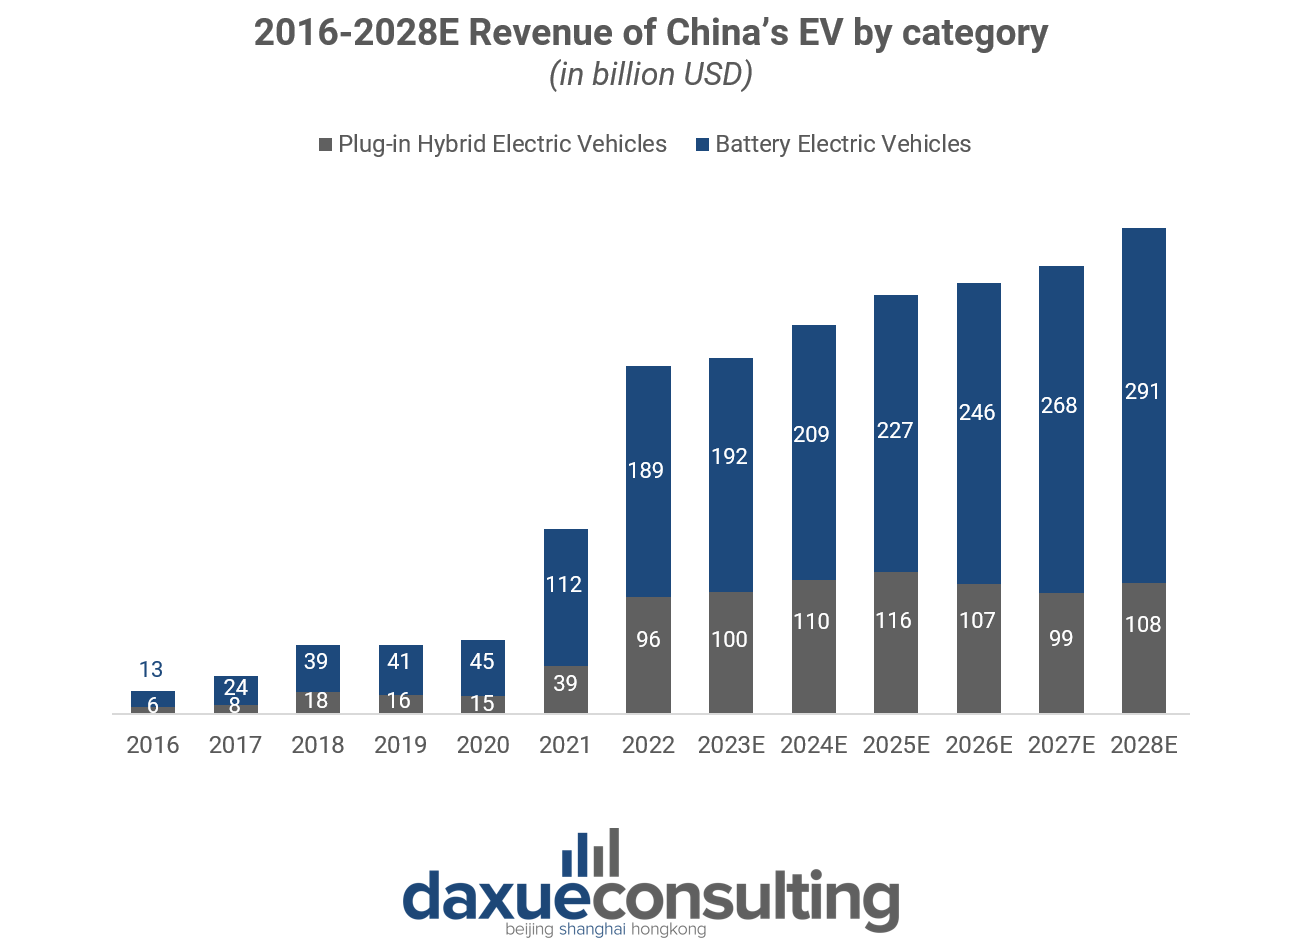 2016-2028E Revenue of China’s EV market by category